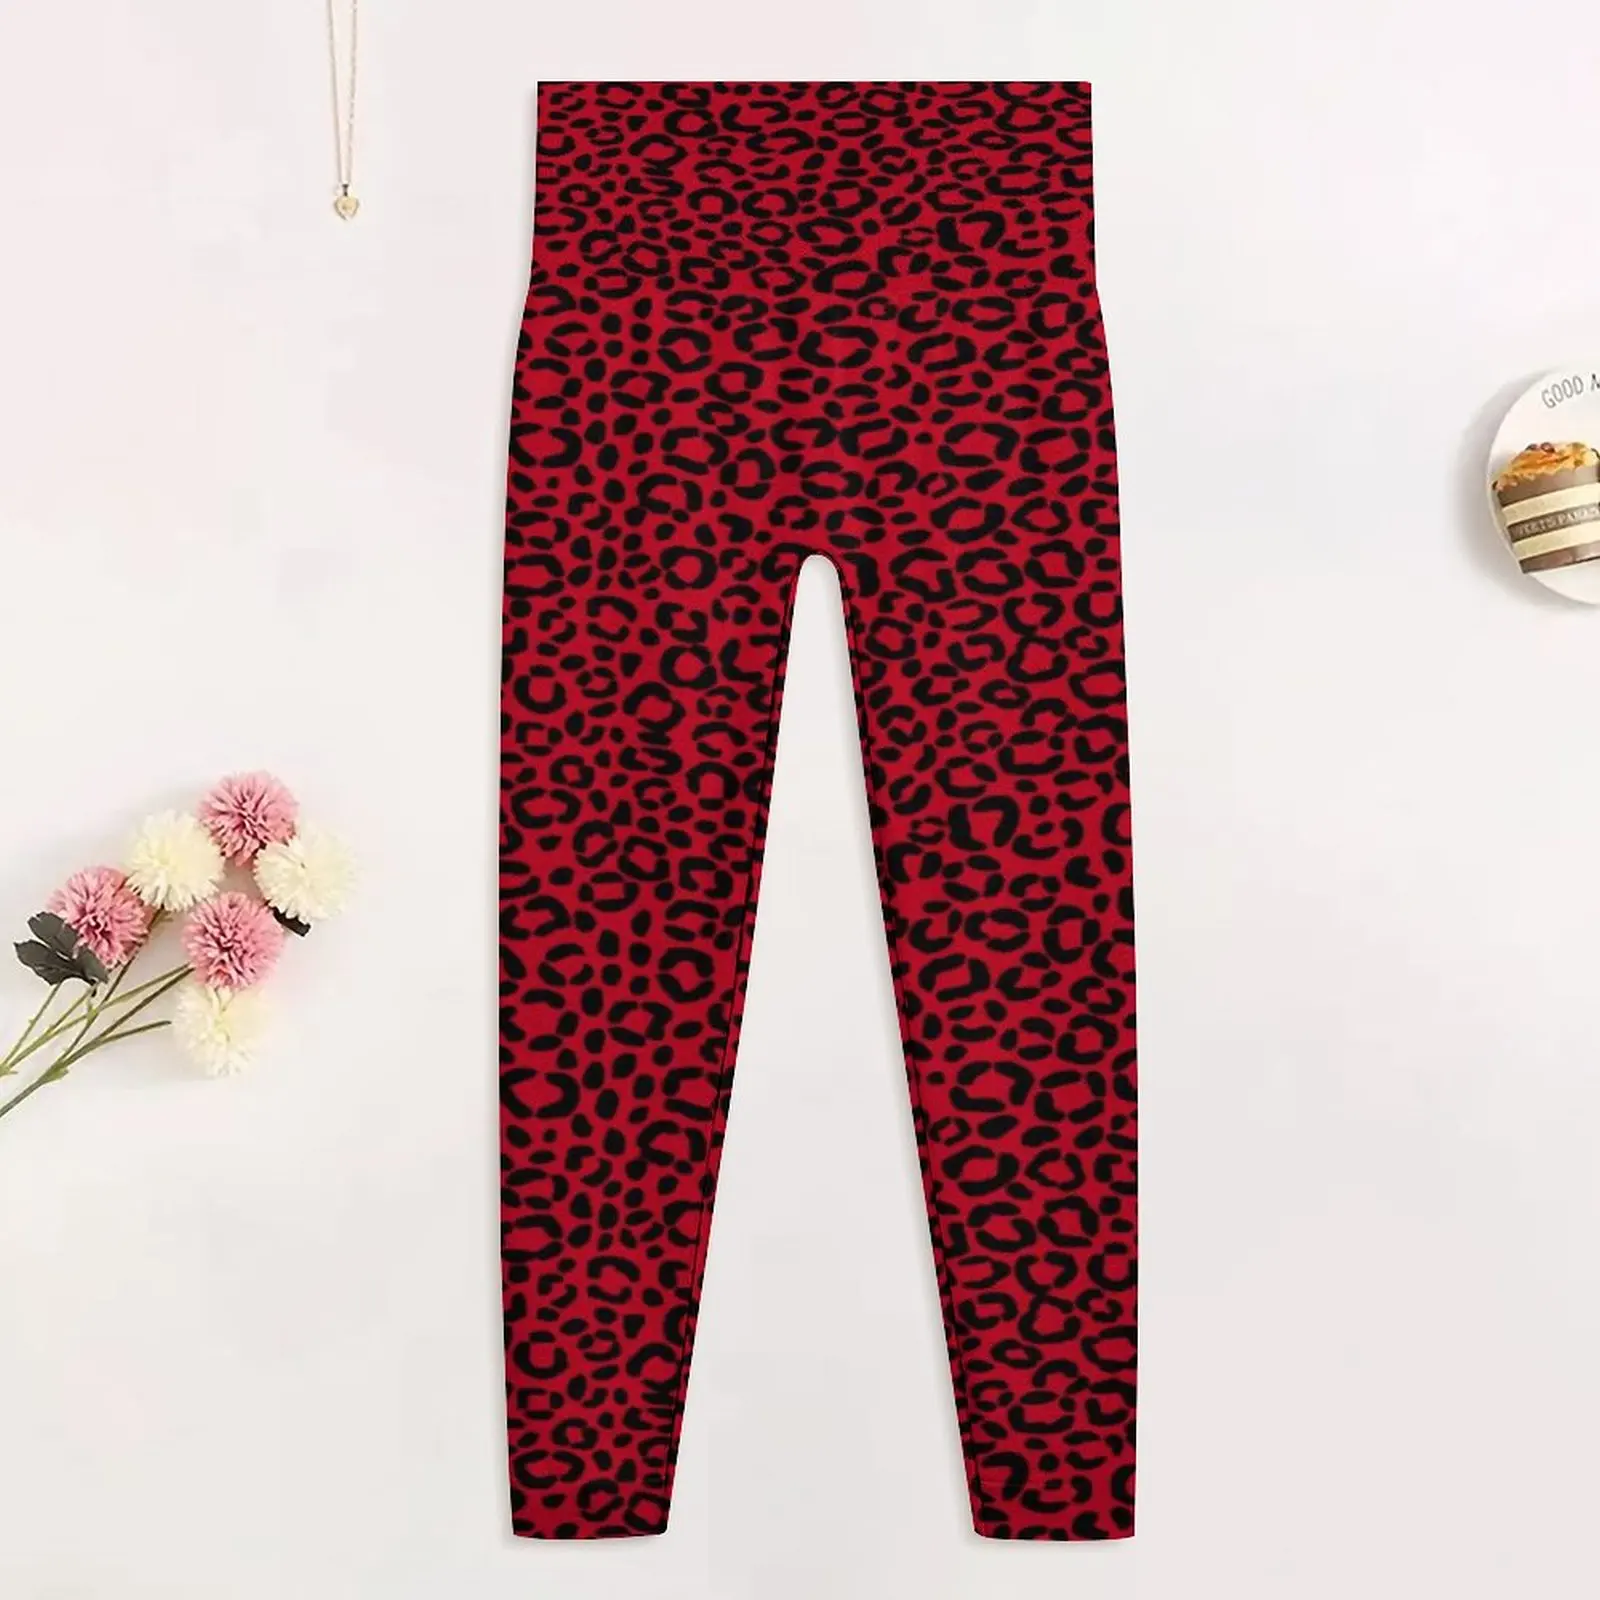 Vermelho E Preto Leopardo Perfeita Perneiras De Pele De Animal Print Ginásio Calças De Yoga Push-Up Elástico Meia-Calça Esporte Feminino Engraçado Leggins Imagem 2